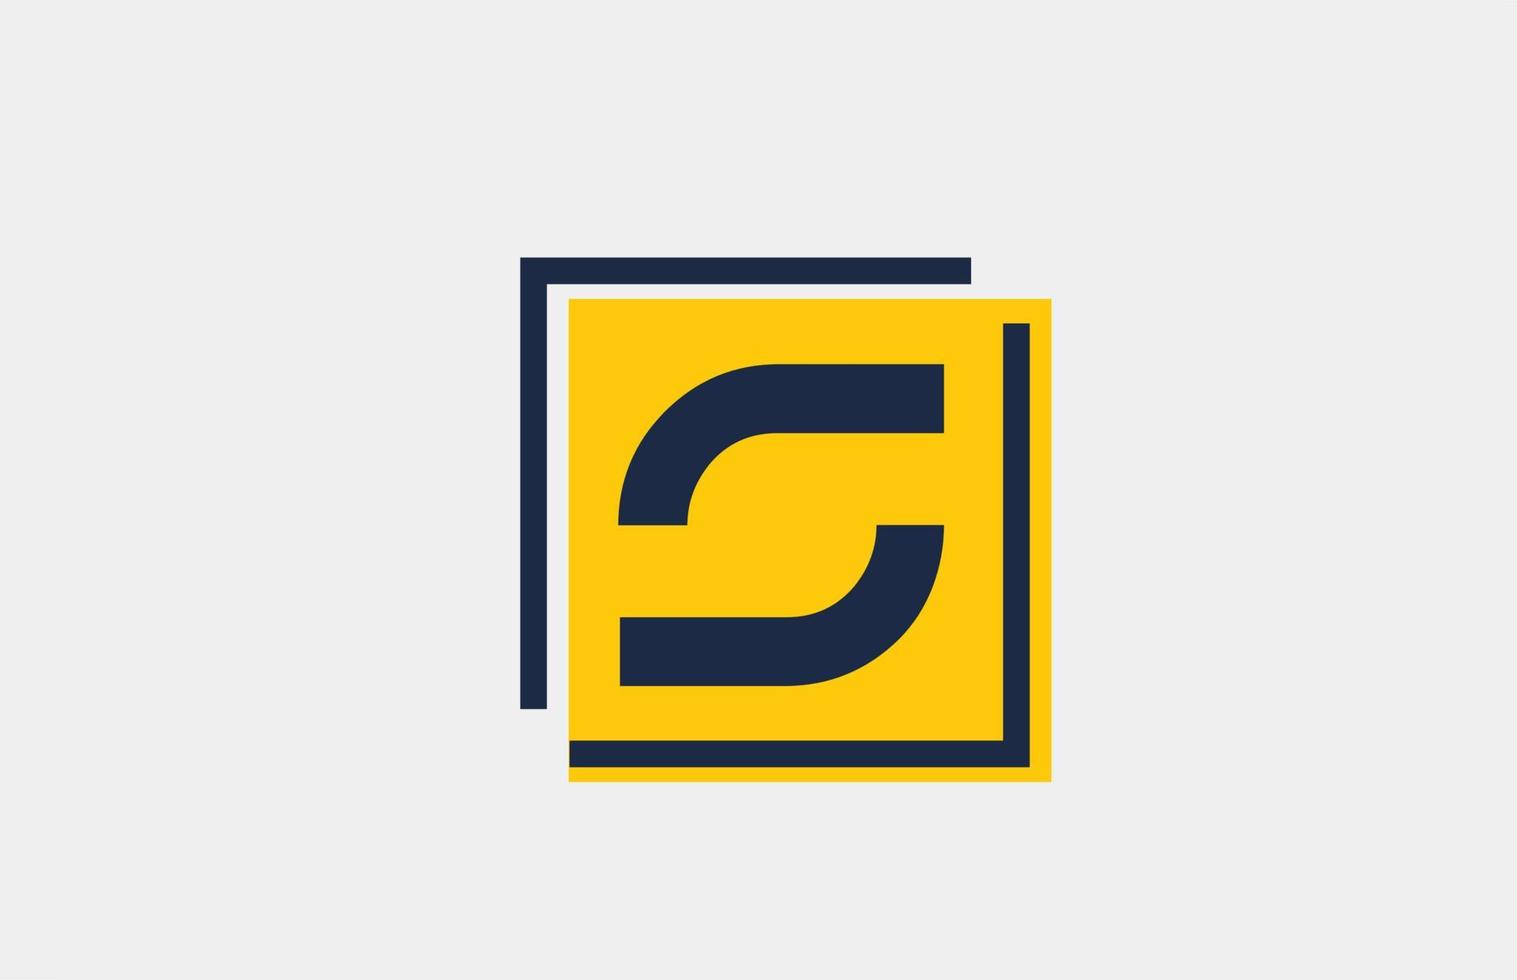 s geel blauw vierkant alfabet letter logo pictogram ontwerp voor zaken en bedrijf vector